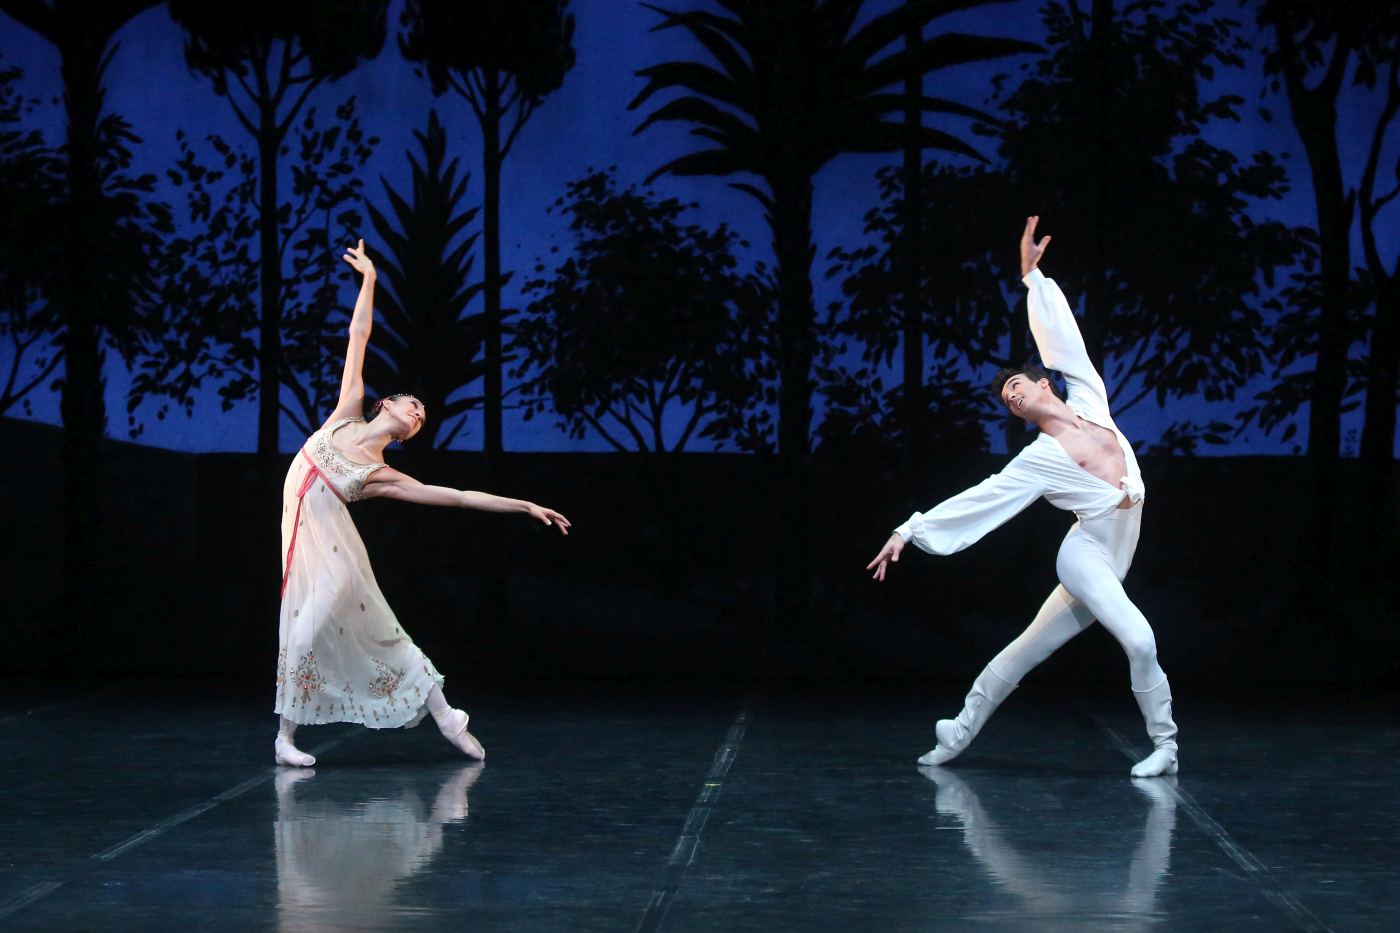 11. R.Aleman (Juliet) and M.F.Paixà (Romeo), “Rome and Juliet” by J.Cranko, Stuttgart Ballet 2018 © Stuttgart Ballet